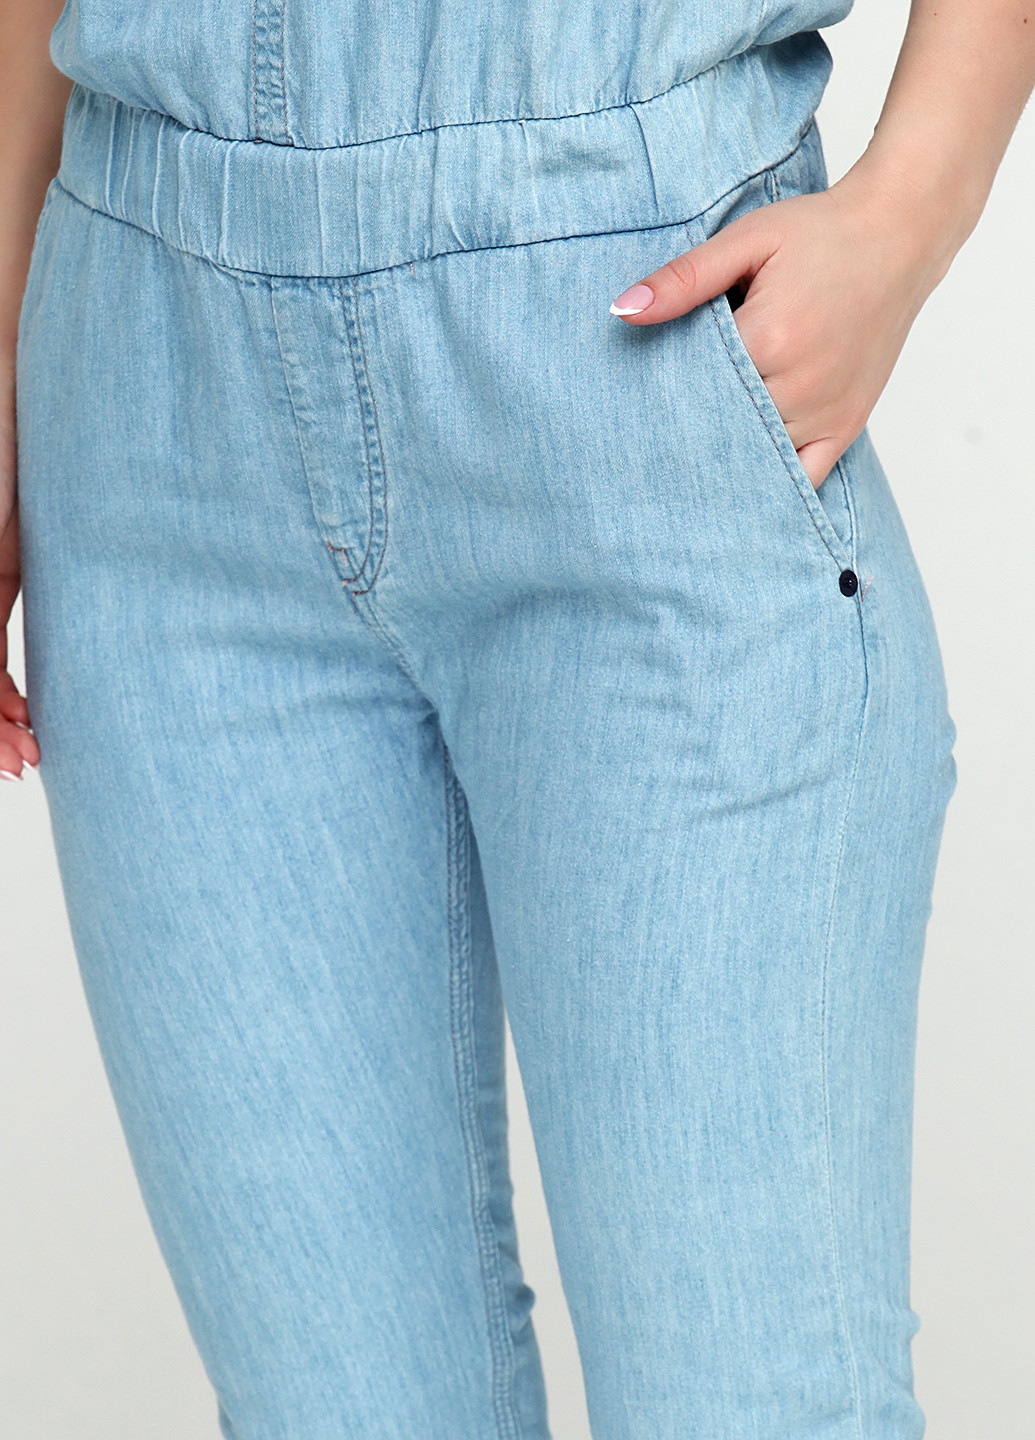 Комбінезон Pepe Jeans комбінезон-брюки однотонний блакитний джинсовий